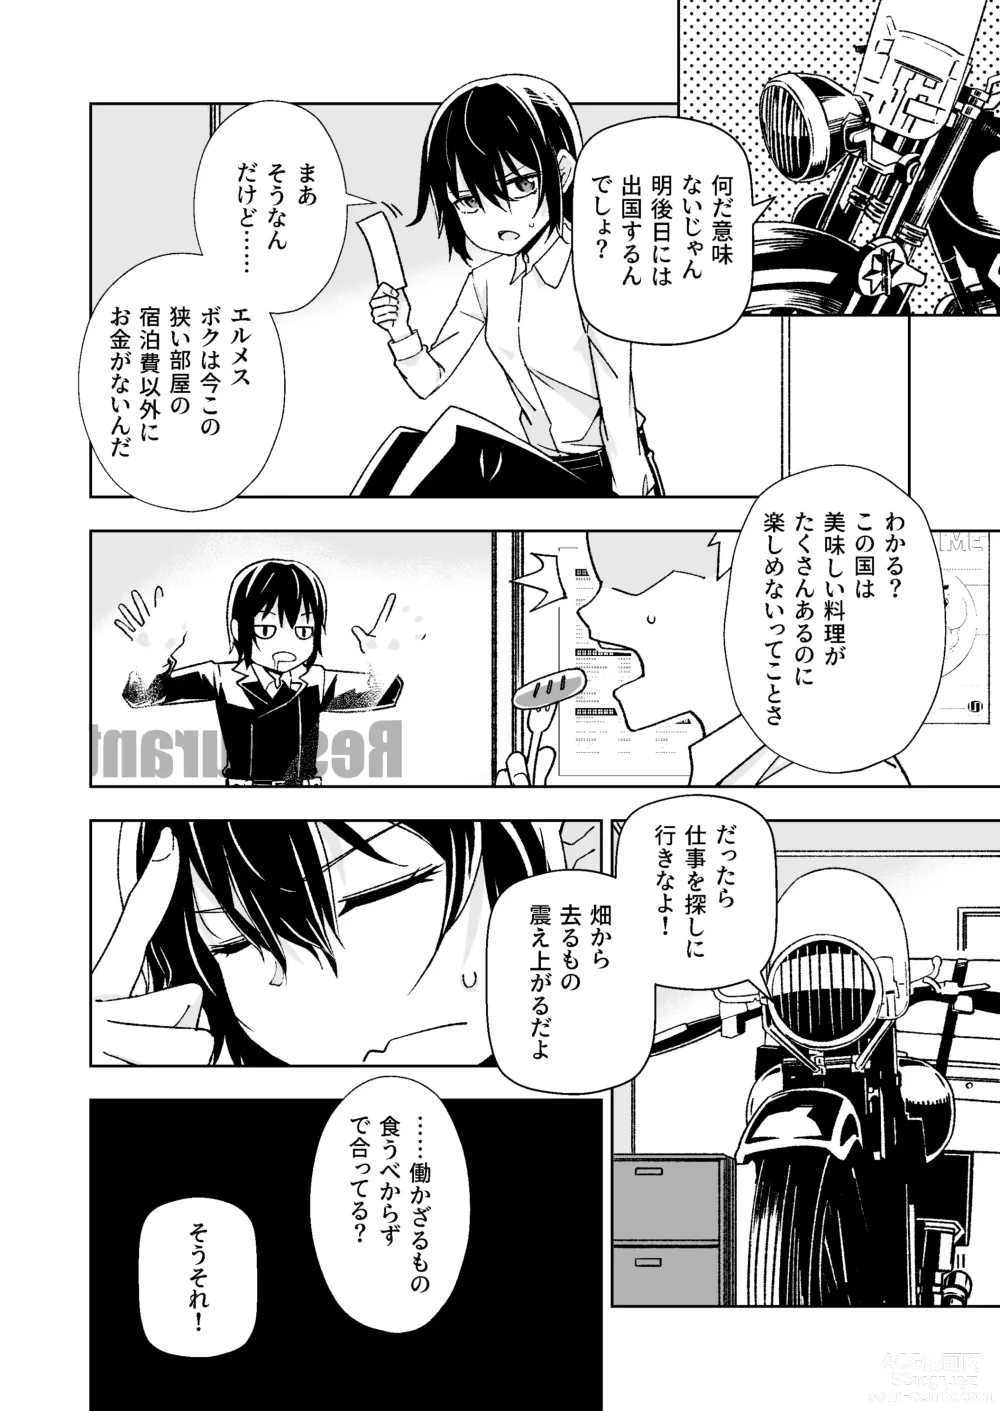 Page 3 of doujinshi Tabibito ga Karada o Utte okane o Kasegu Hanashi